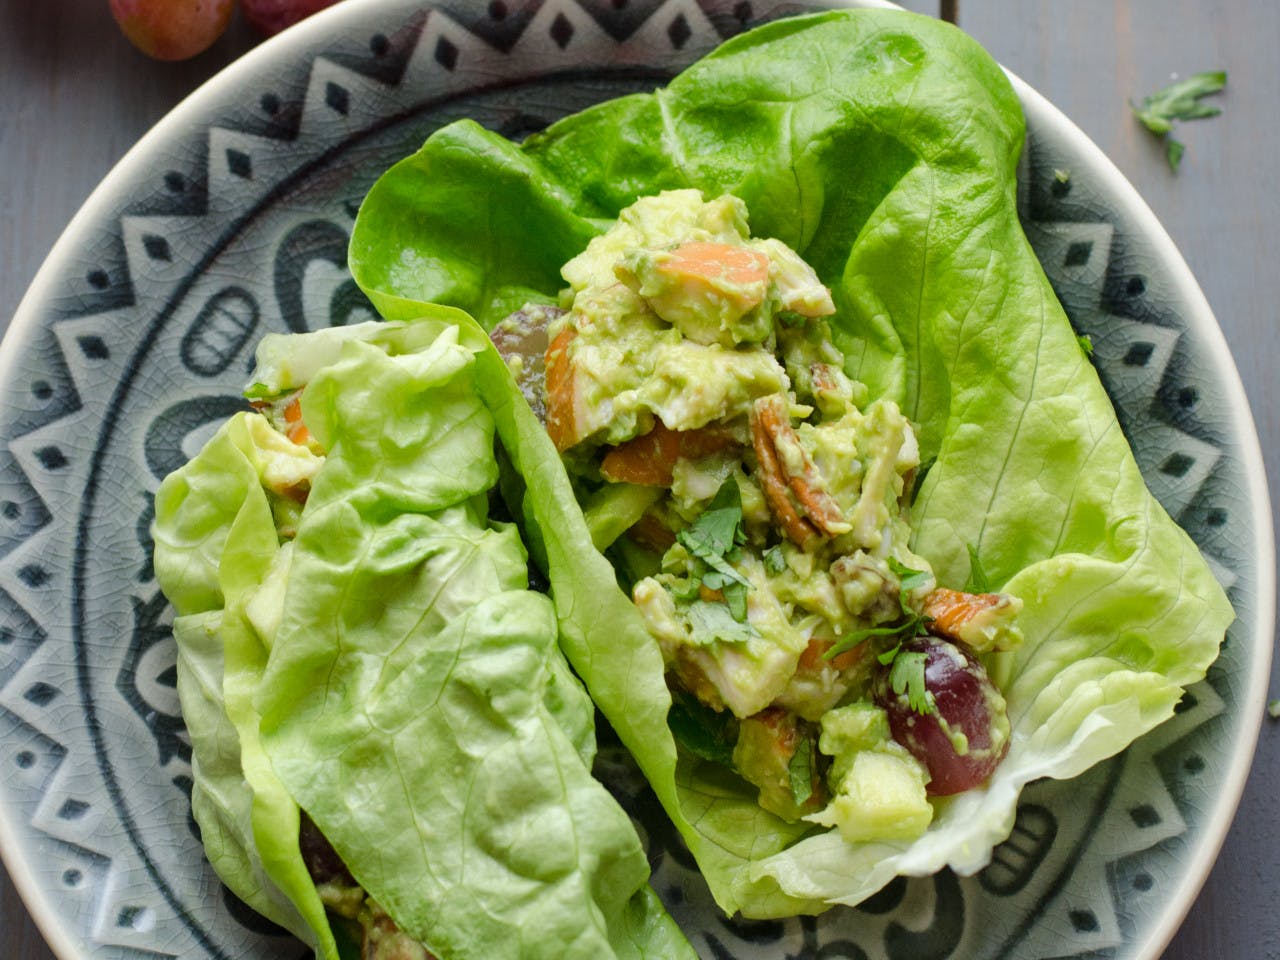 Chicken and avocado salad wrap